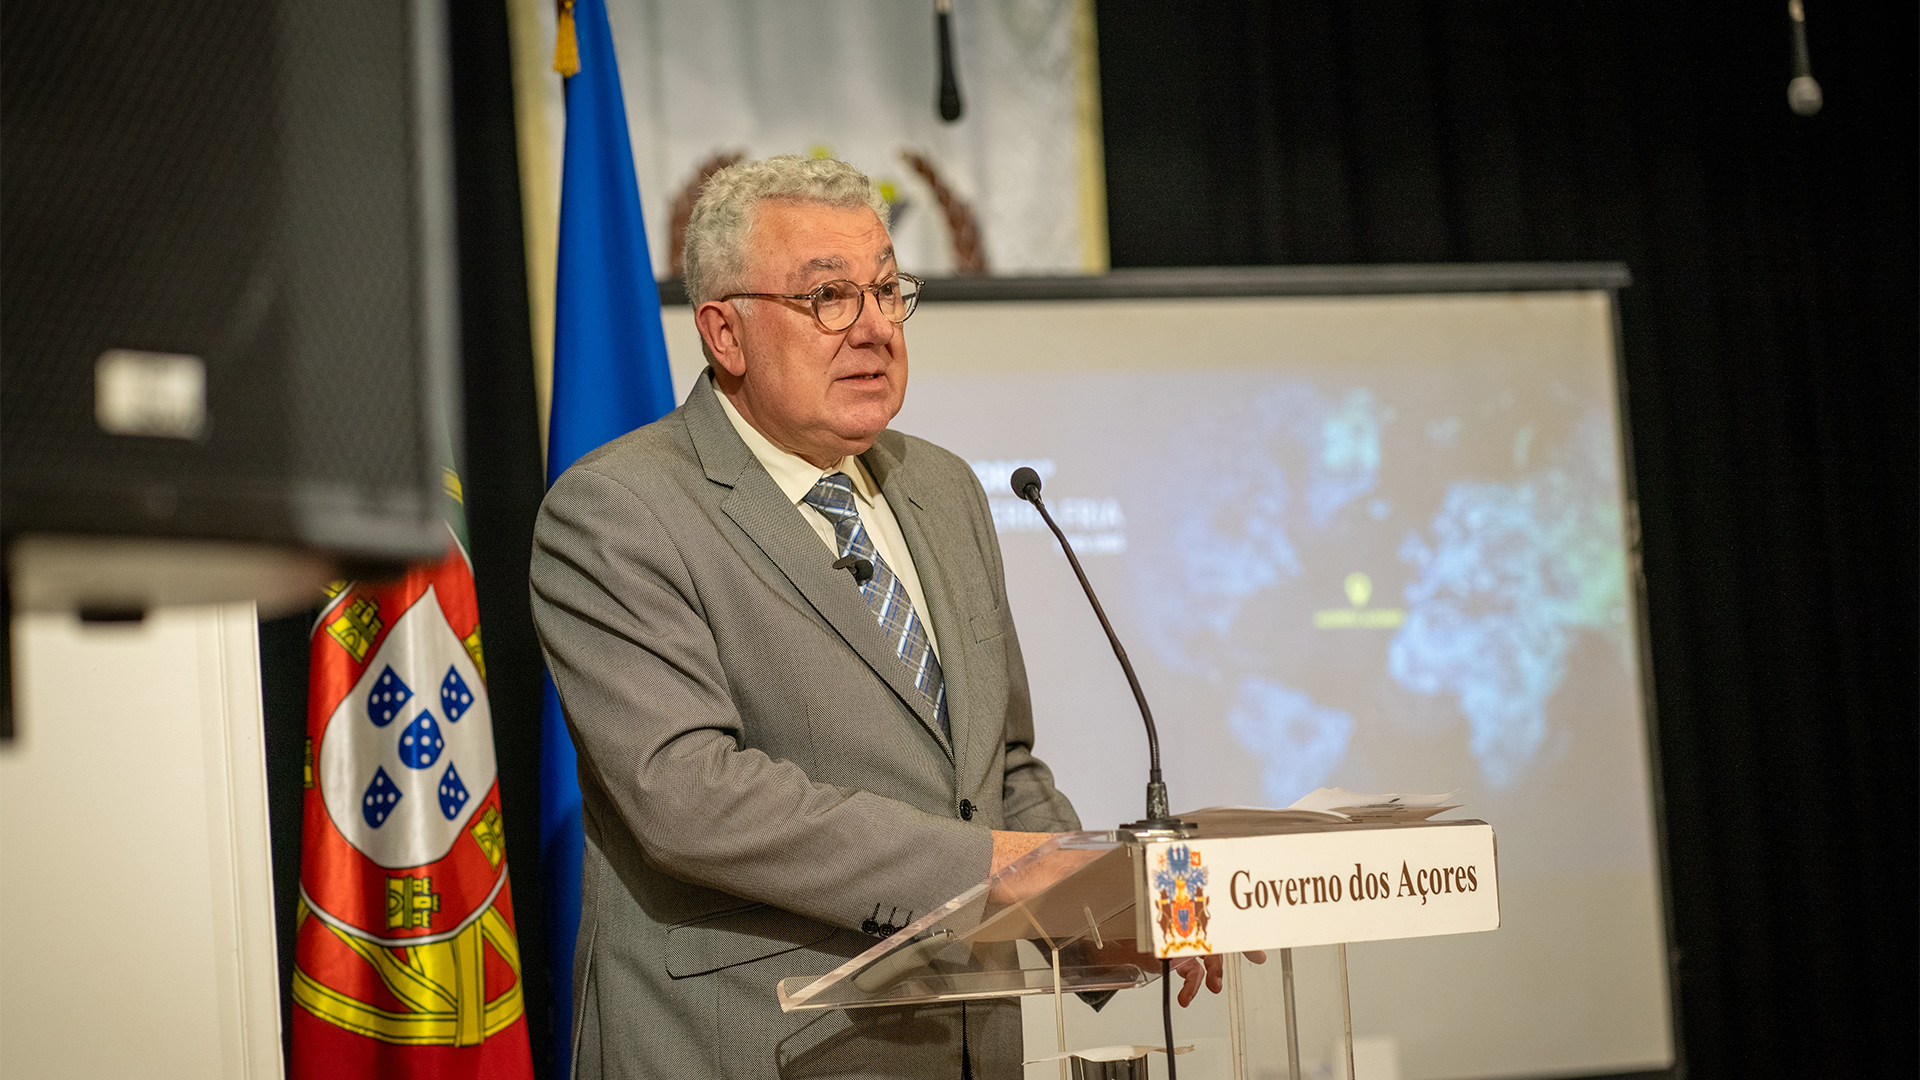 Açores devem tirar partido do valor estratégico da Base das Lajes, frisa Artur Lima